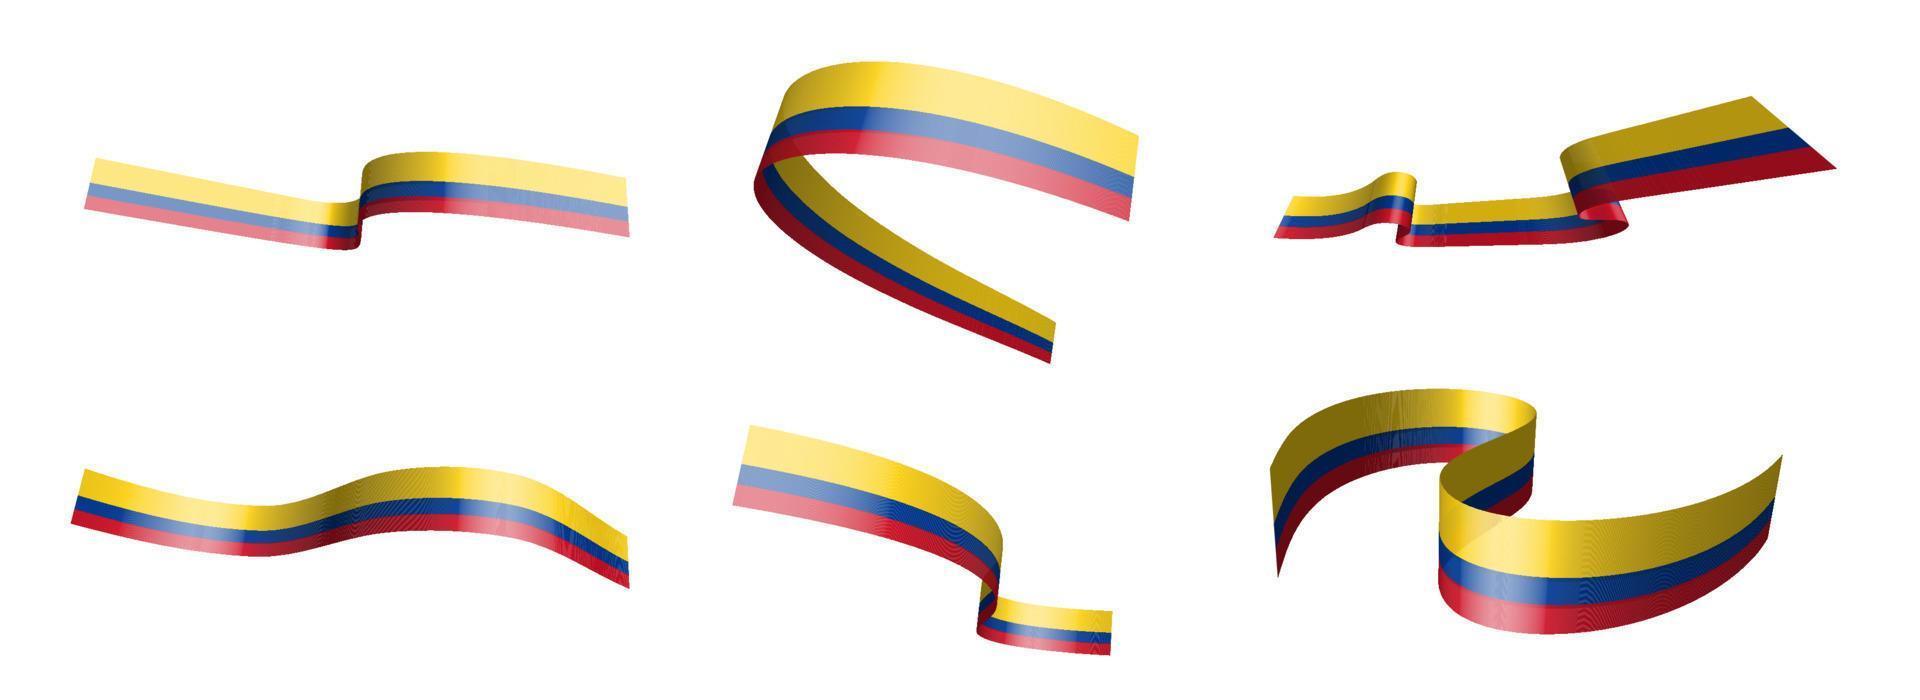 ensemble de rubans de vacances. drapeau de la colombie agitant au vent. séparation en couches inférieures et supérieures. élément de conception. vecteur sur fond blanc